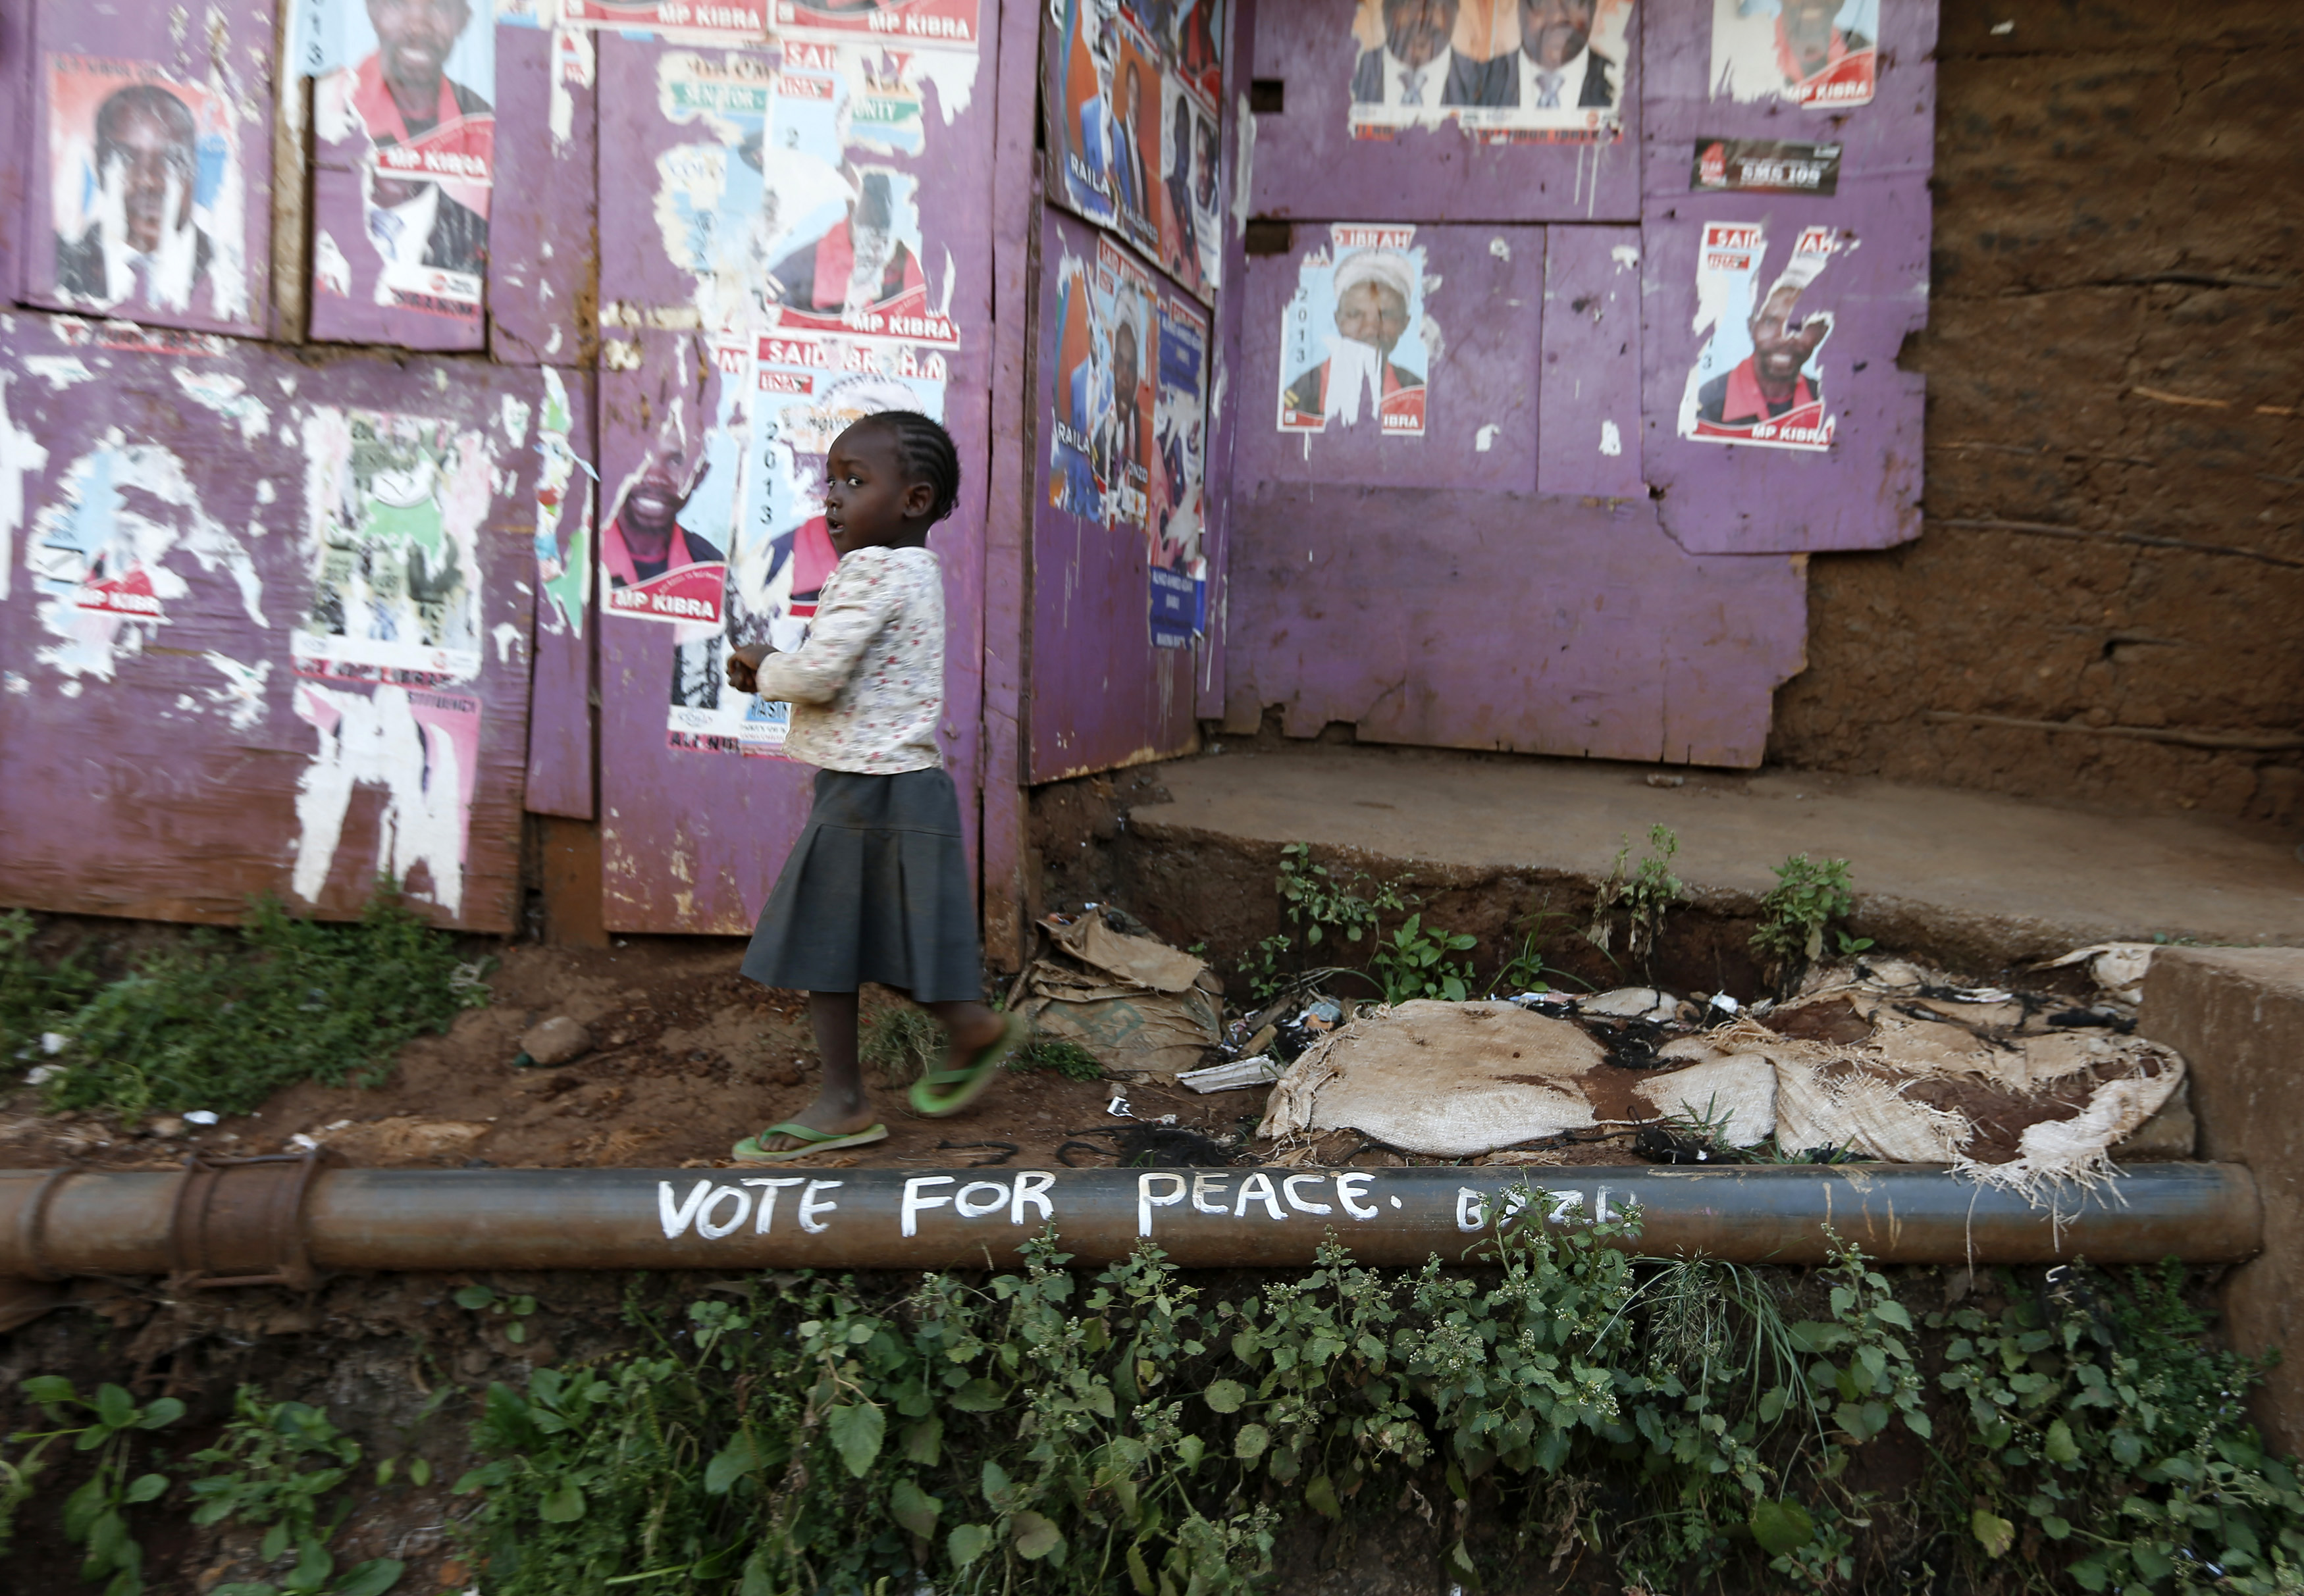 Une jeune fille passe devant des affiches électorales et un slogan appelant à la paix dans le bidonville de Kibera à Nairobi le 7 mars 2013